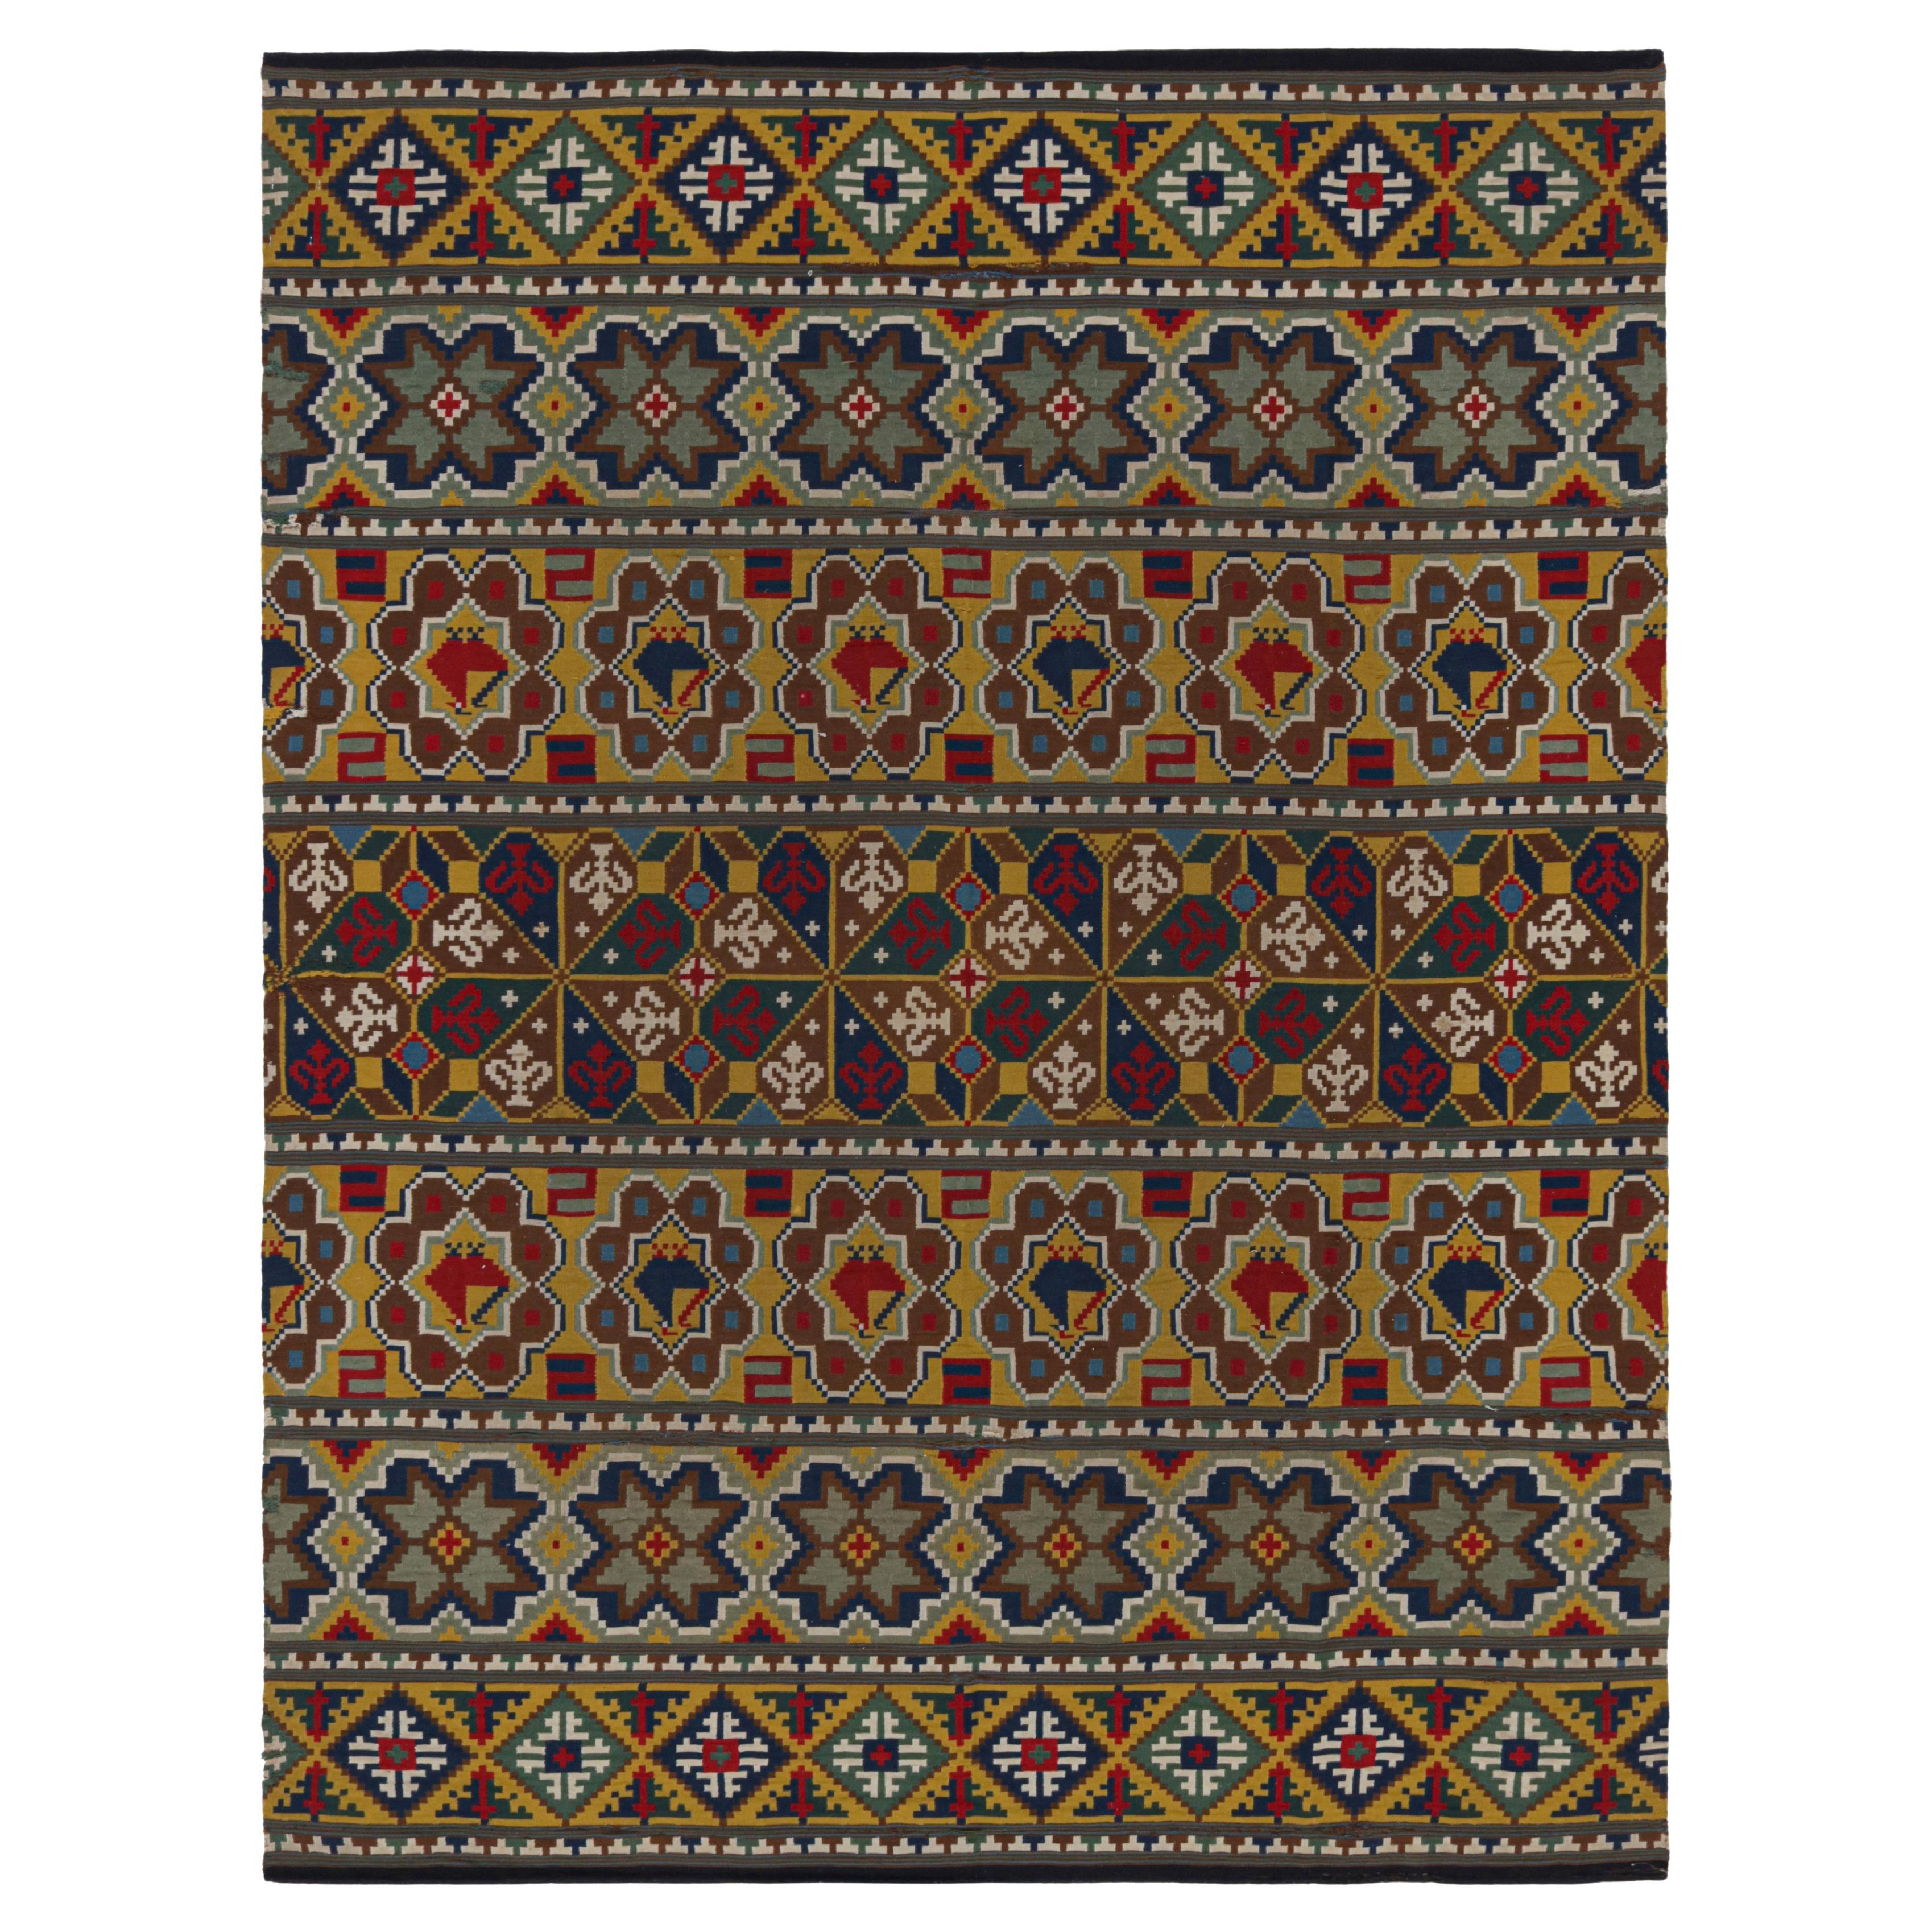 Antike schwedische Textilien mit polychromen Mustern und Bildern aus Rug & Kilim